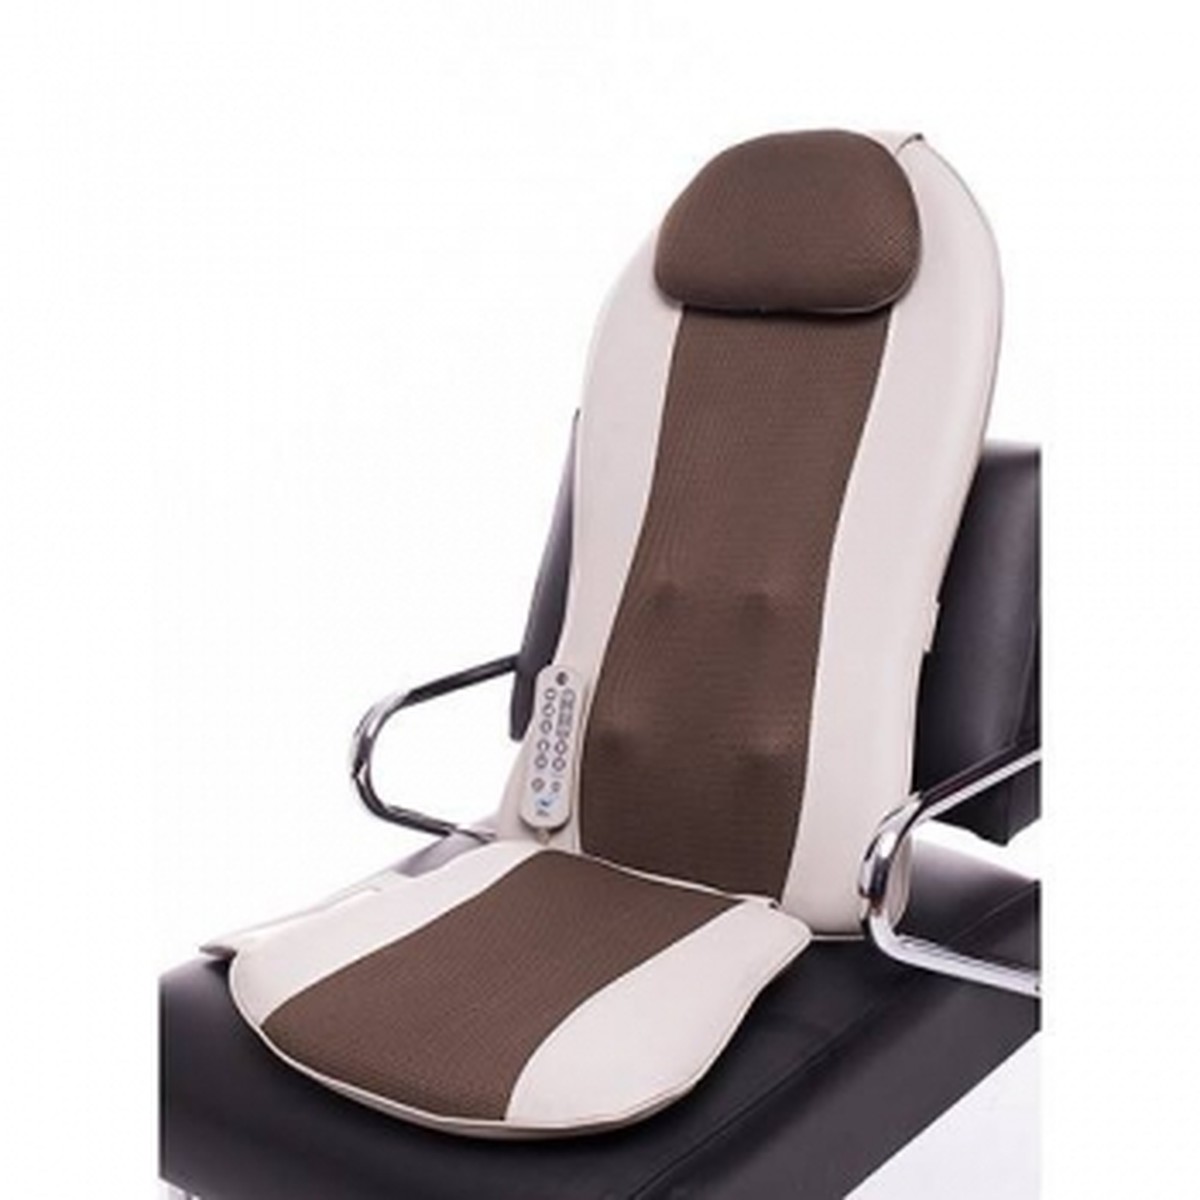 Foto do produto Assento Massageador Back Shiatsu Seat